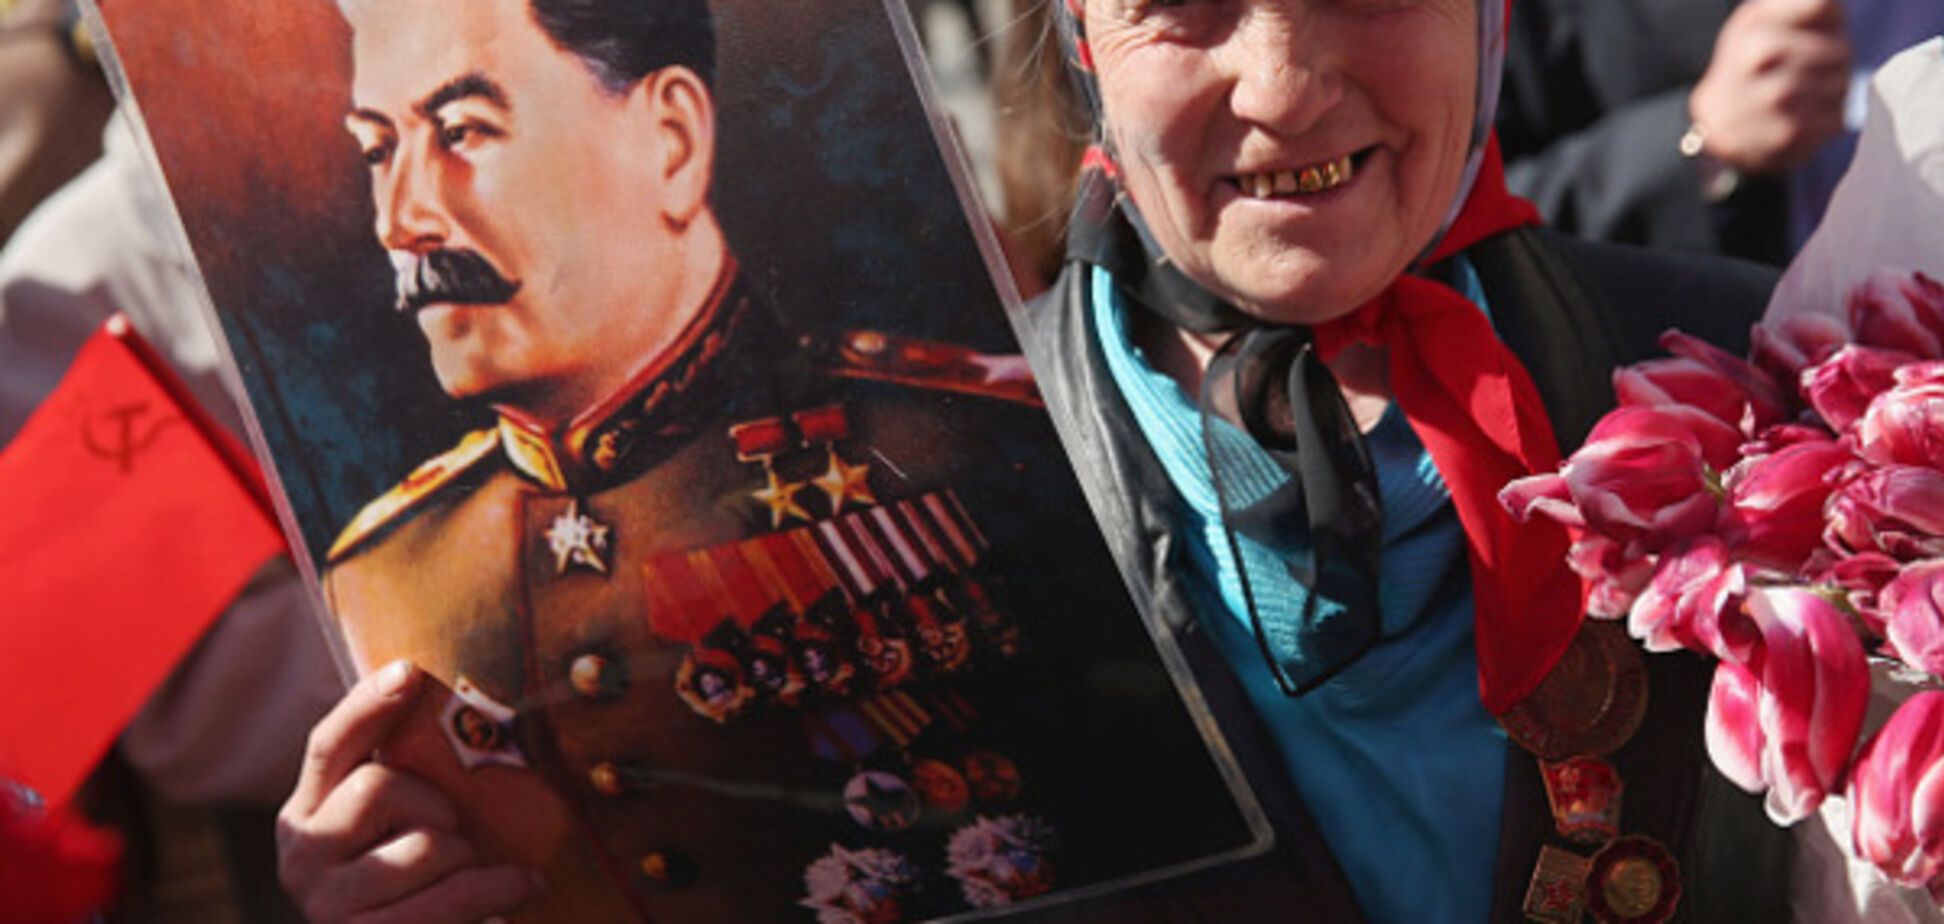 портрет Сталина, Москва, празднование дня Победы